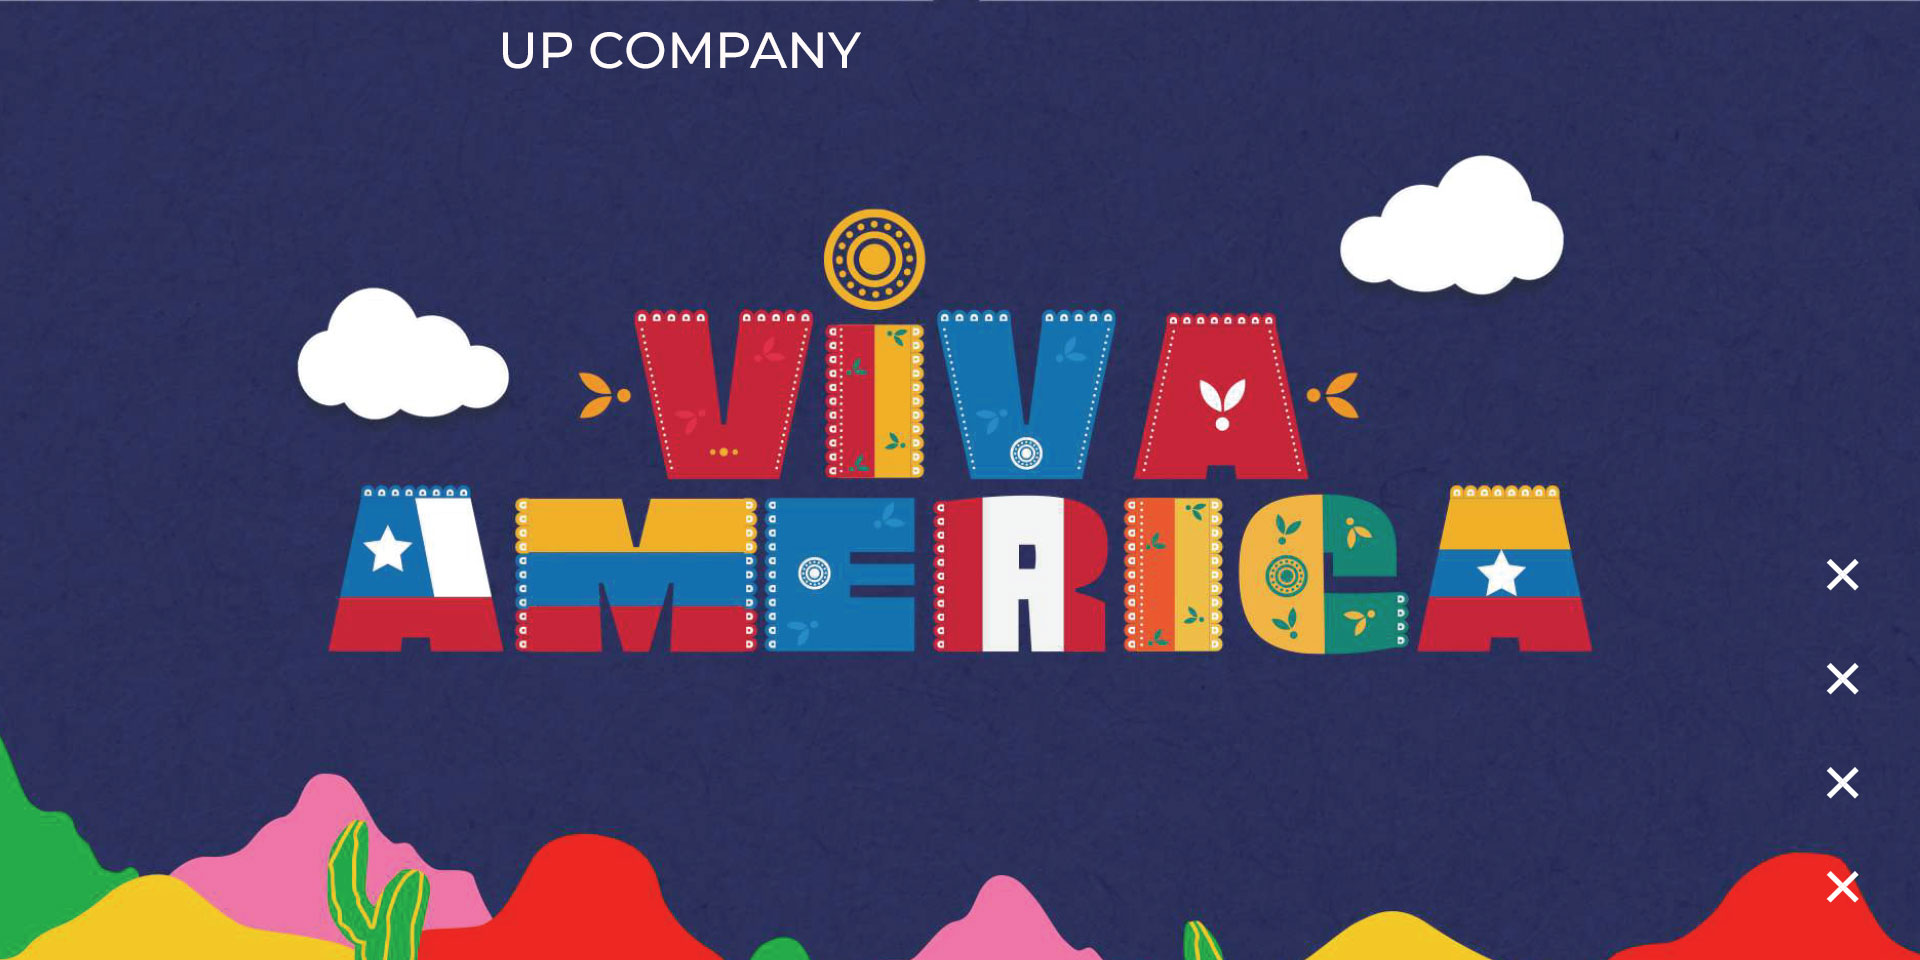 Descuento exclusivo para socios AMDD auspiciadores de Viva América, el nuevo programa de TV de Up Company